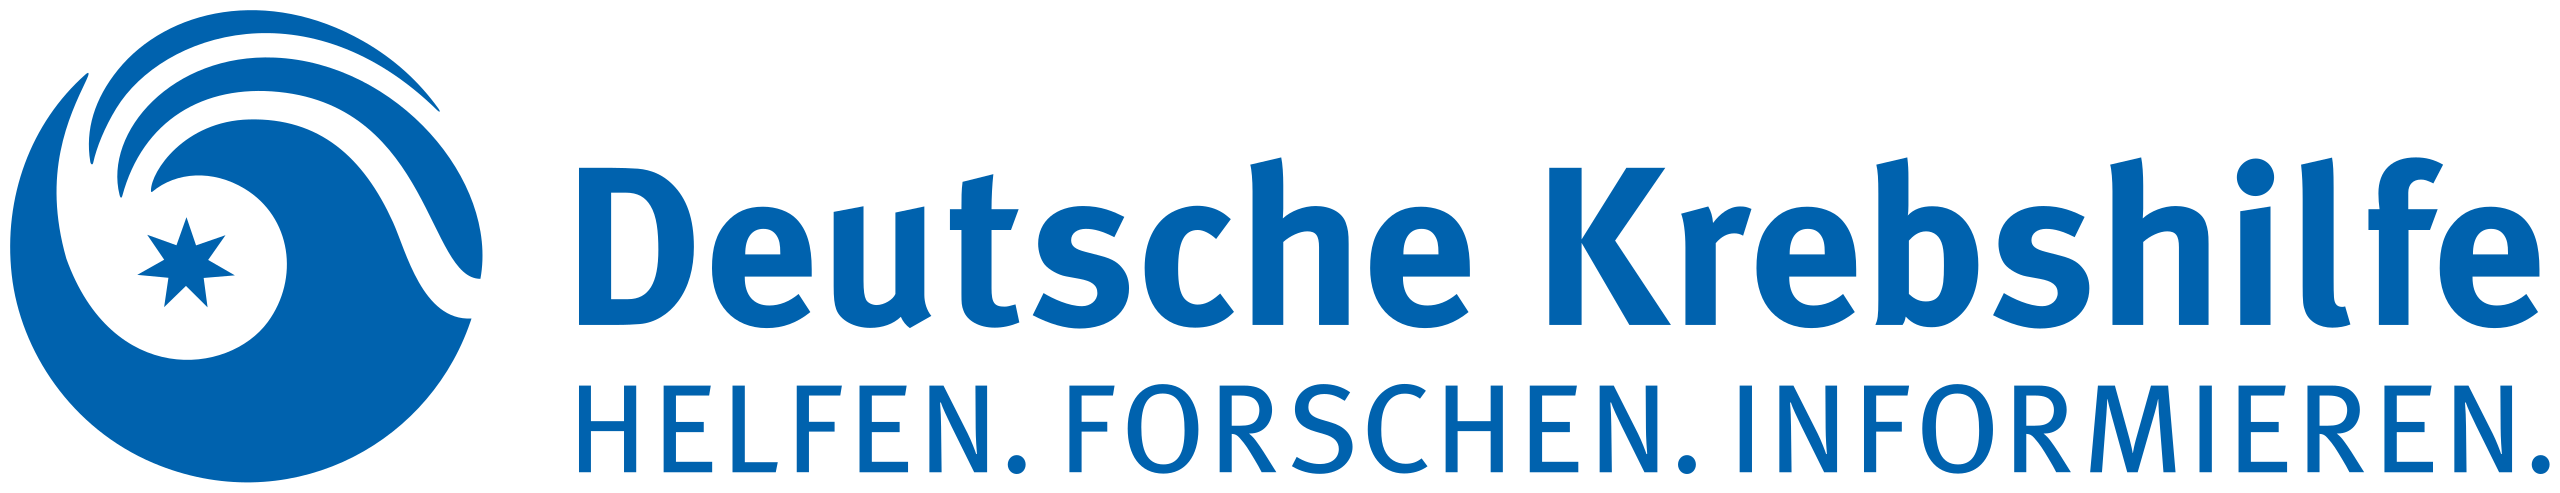 2560px-Deutsche_Krebshilfe_Logo.svg.png